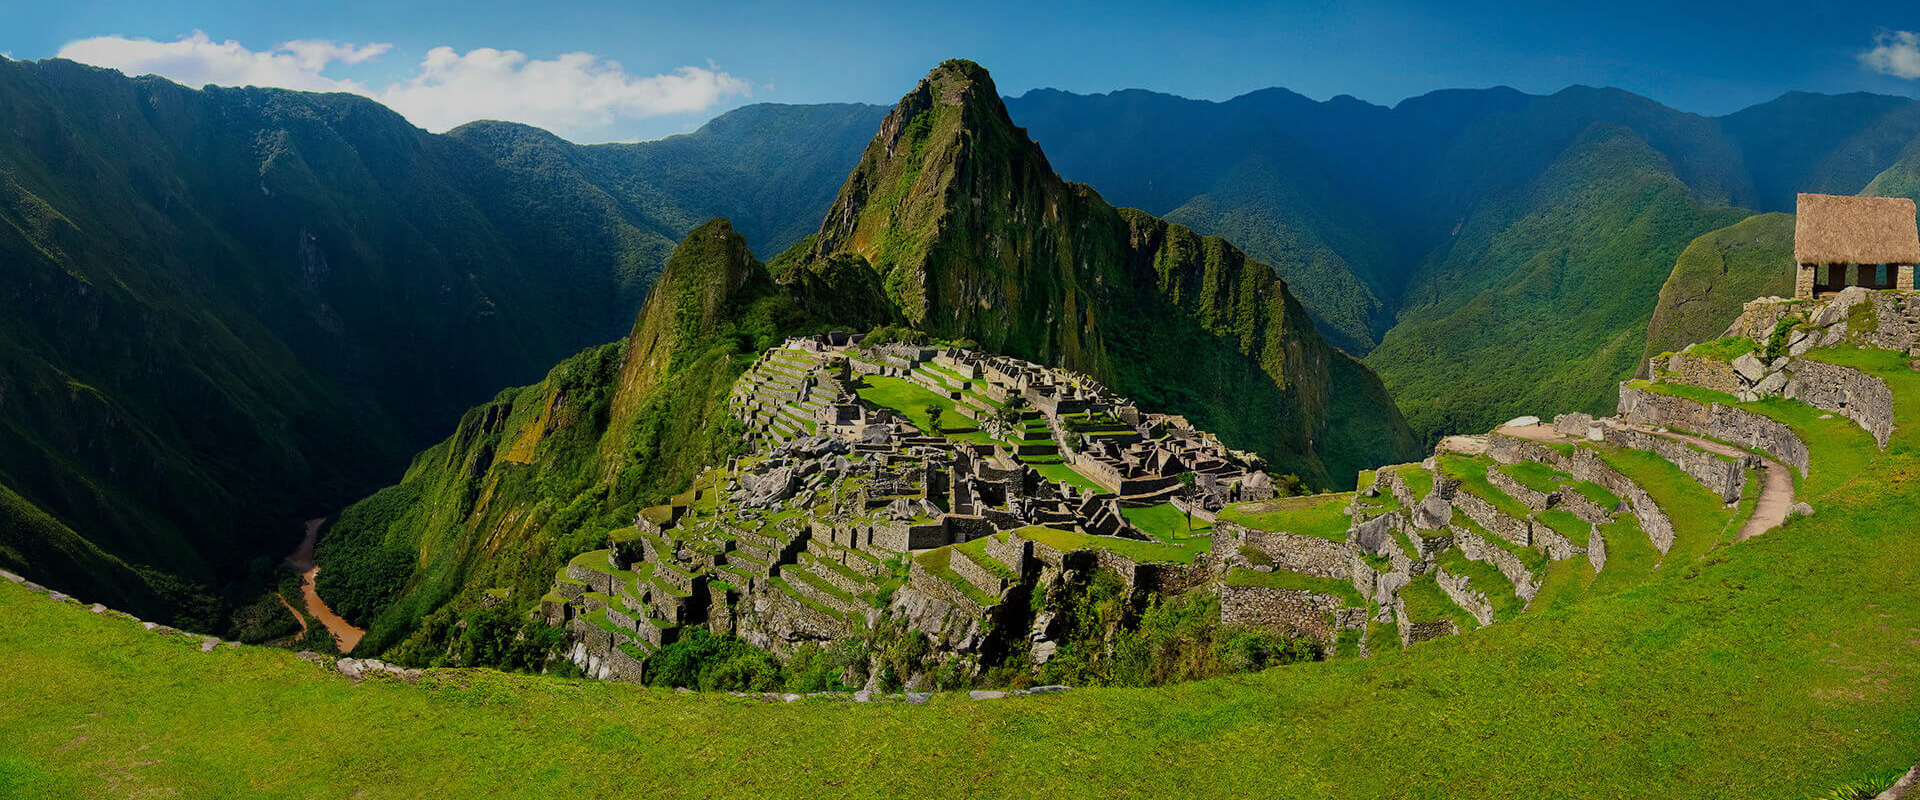 Machu Picchu Peru tours